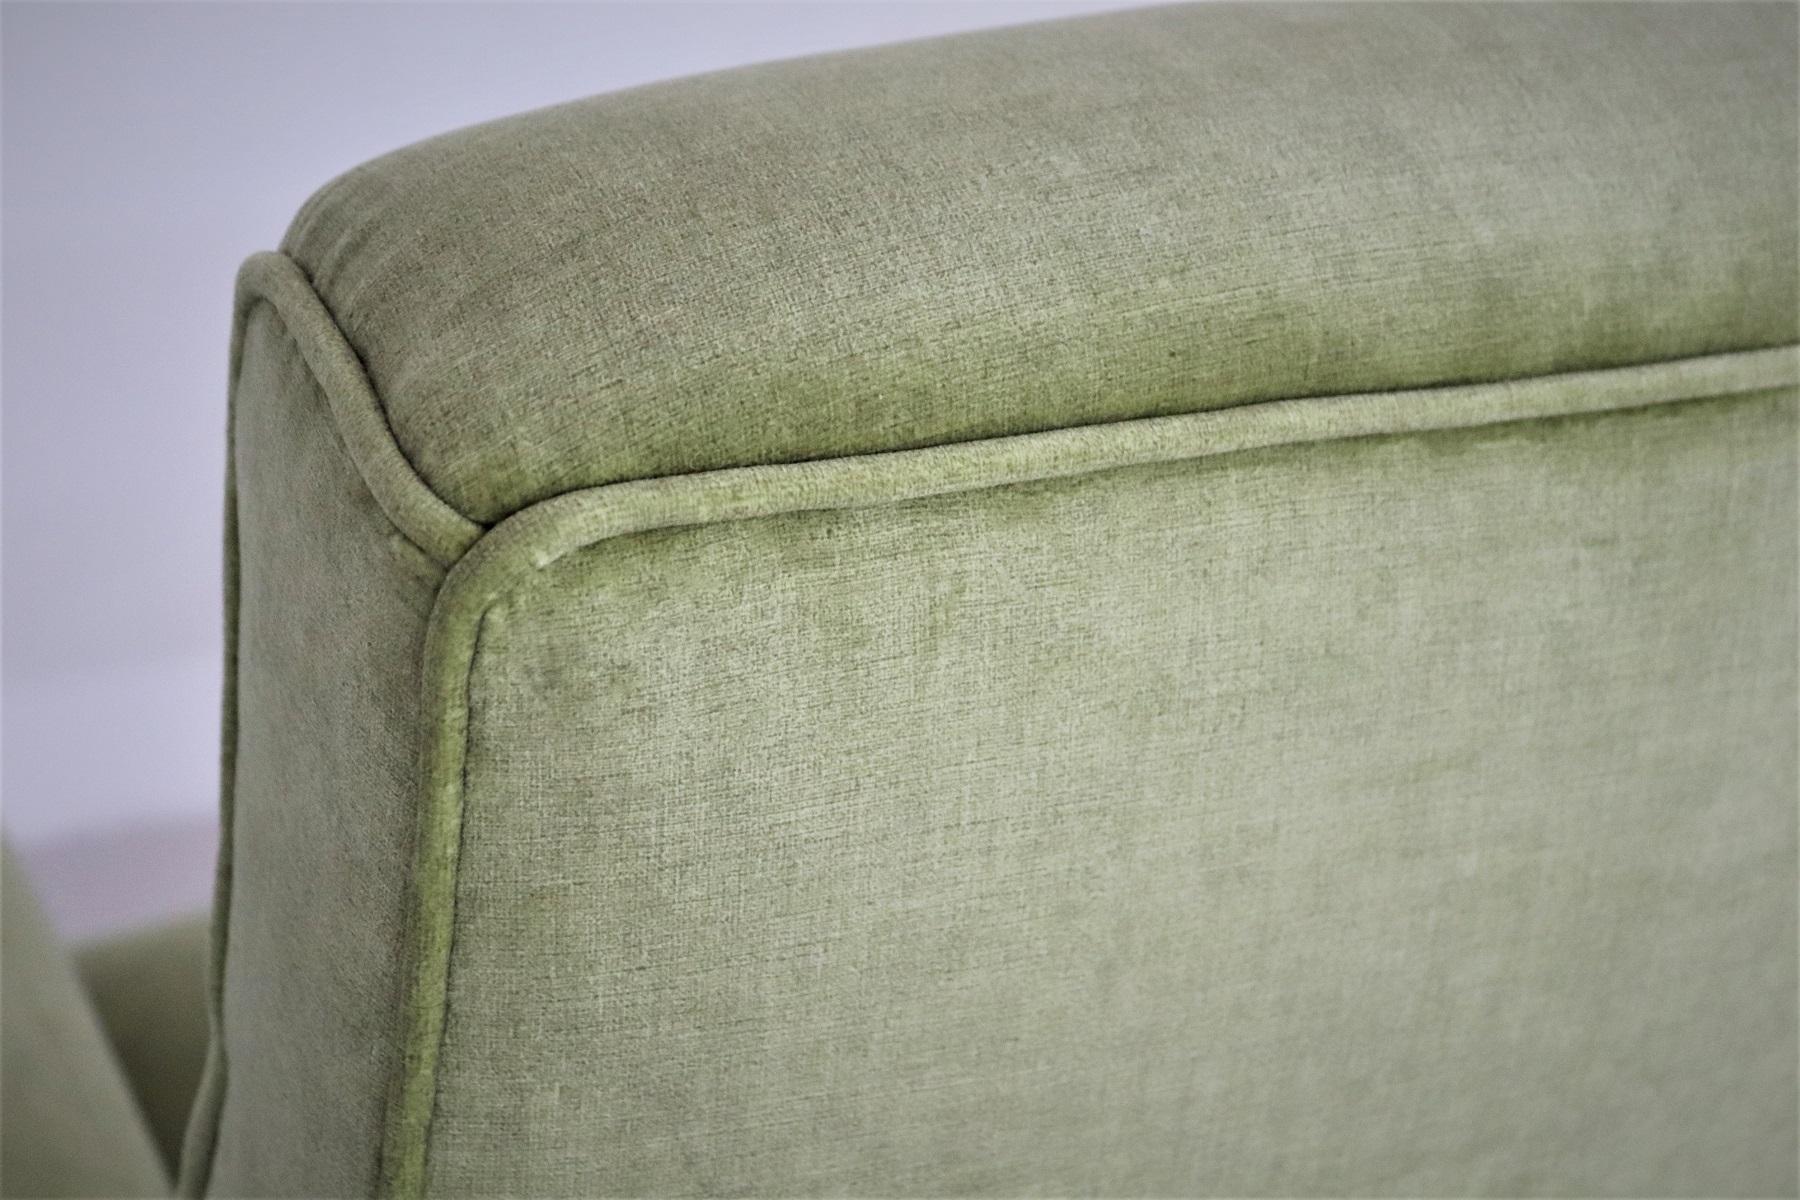 Italian Midcentury Armchairs Re-Upholstered in Green Velvet, 1960s For Sale 5